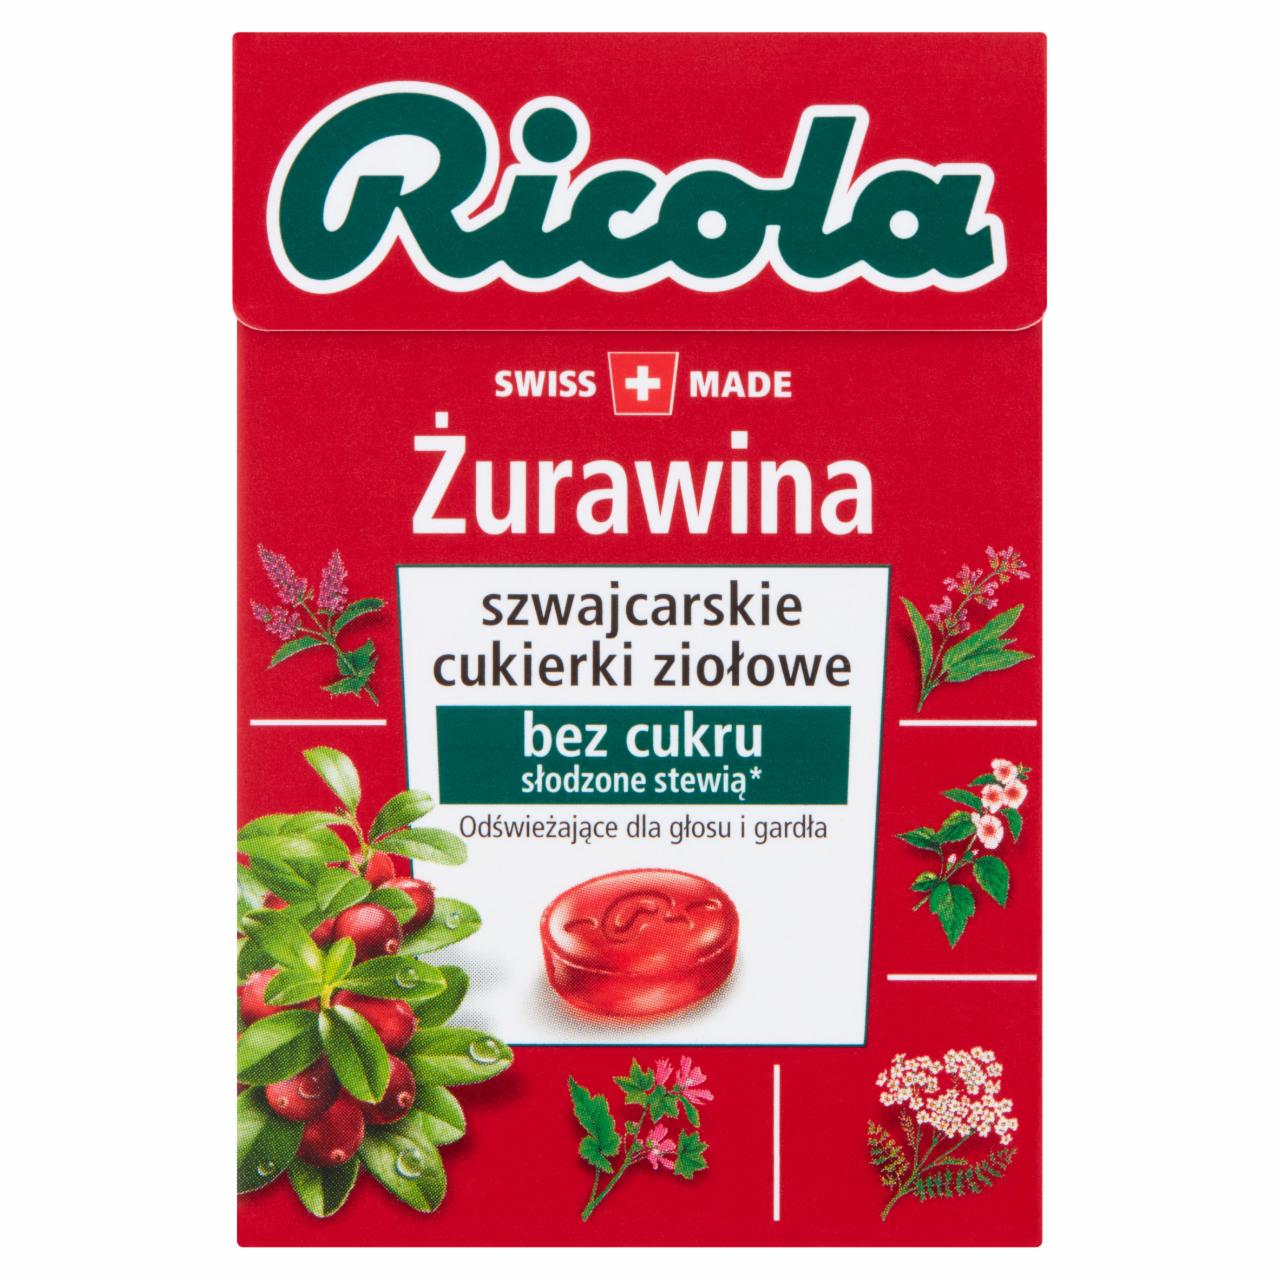 Zdjęcia - Ricola Szwajcarskie cukierki ziołowe żurawina 27,5 g